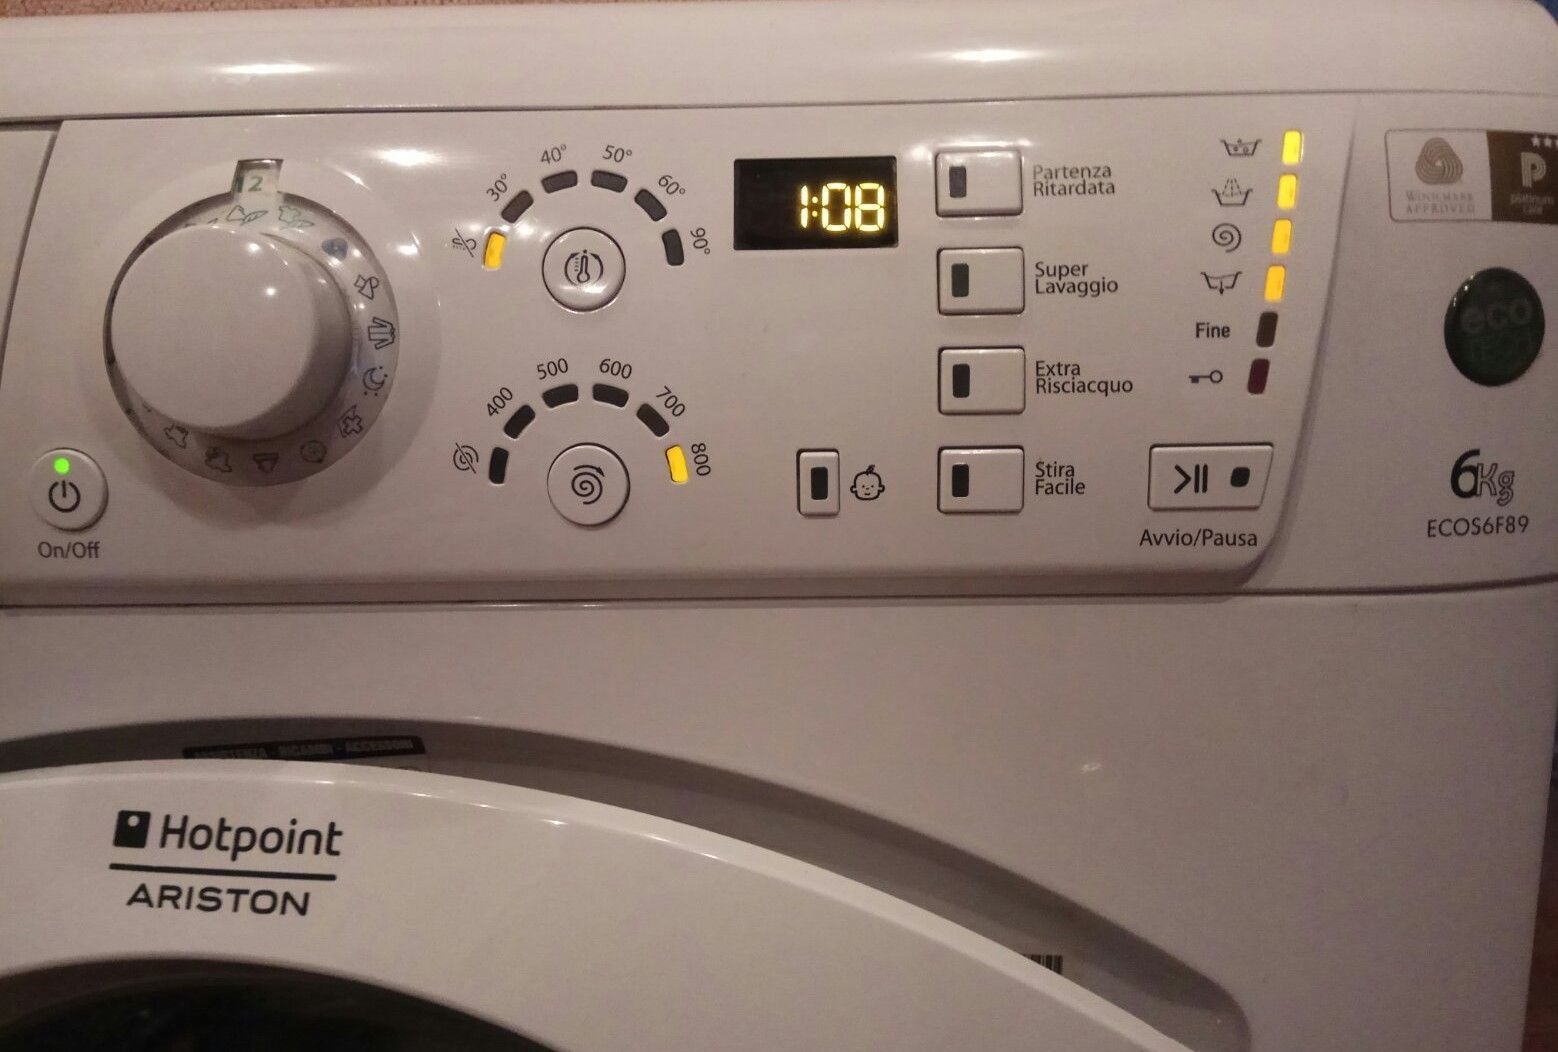 Ремонт стиральных машин Аристон